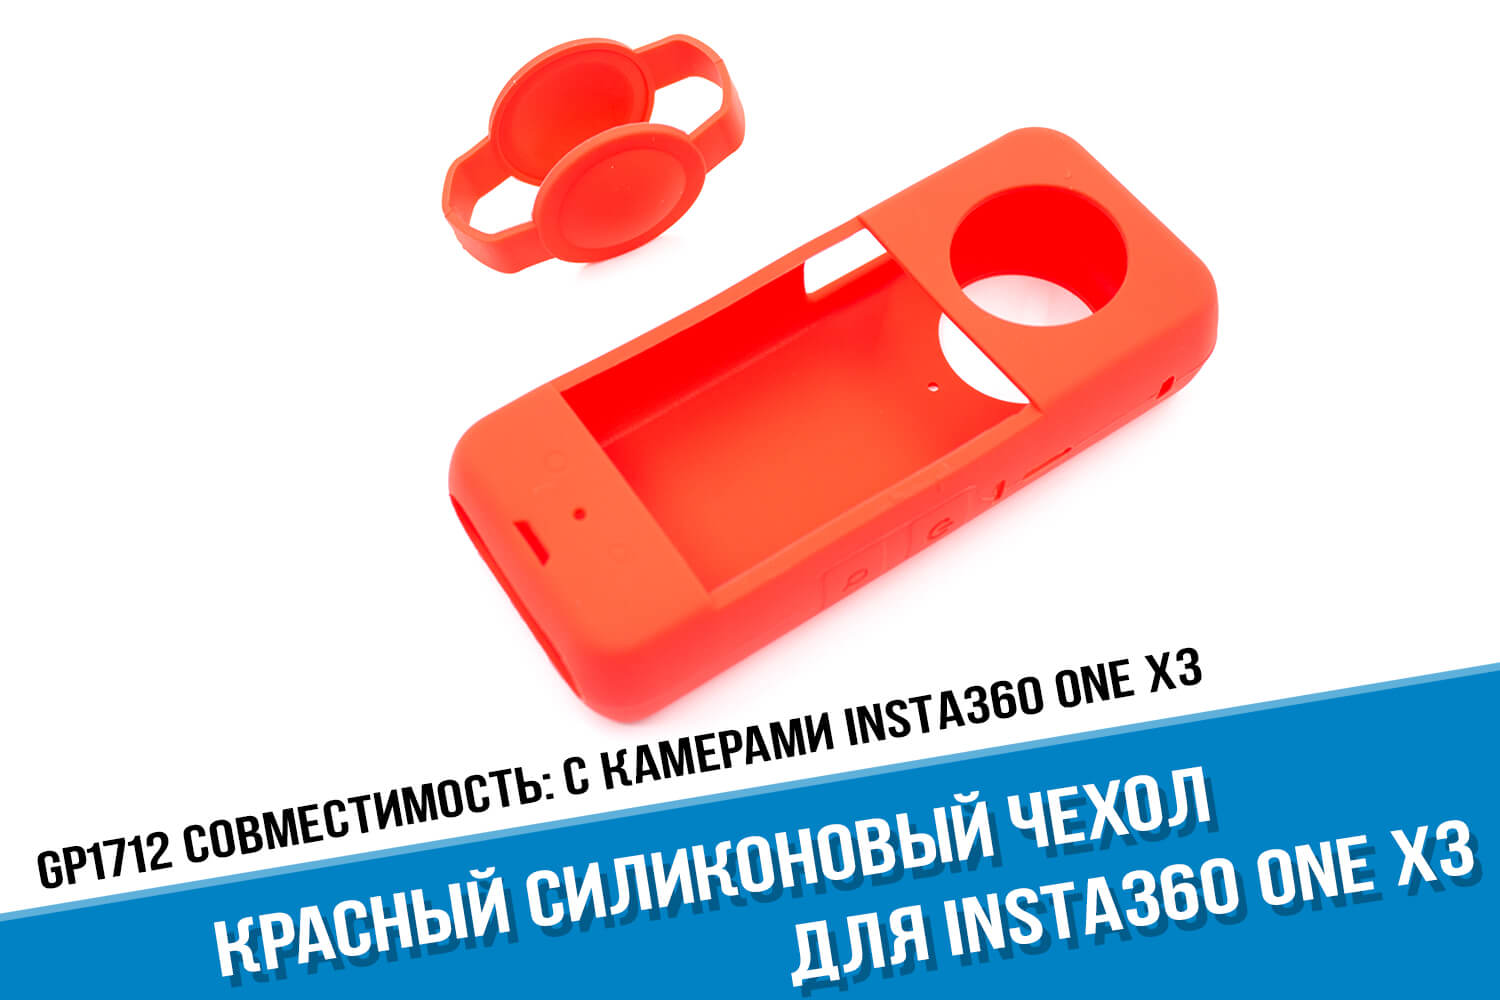 Красный чехол для экшн-камеры Insta360 One X3